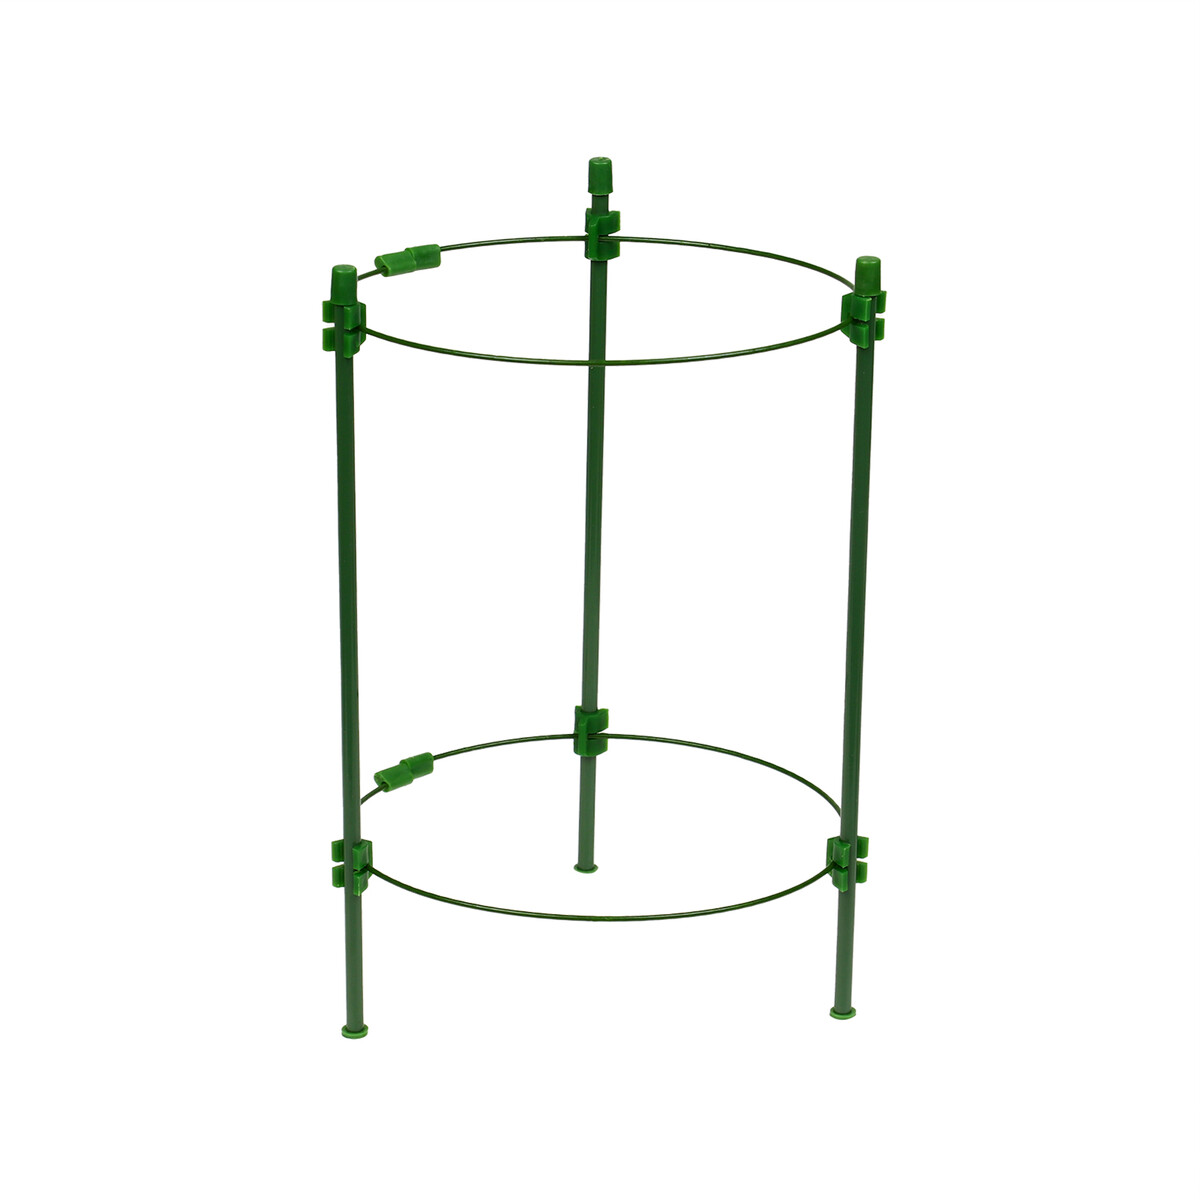 Кустодержатель, d = 18 см, h = 30 см, 2 кольца, металл, зеленый, greengo Greengo